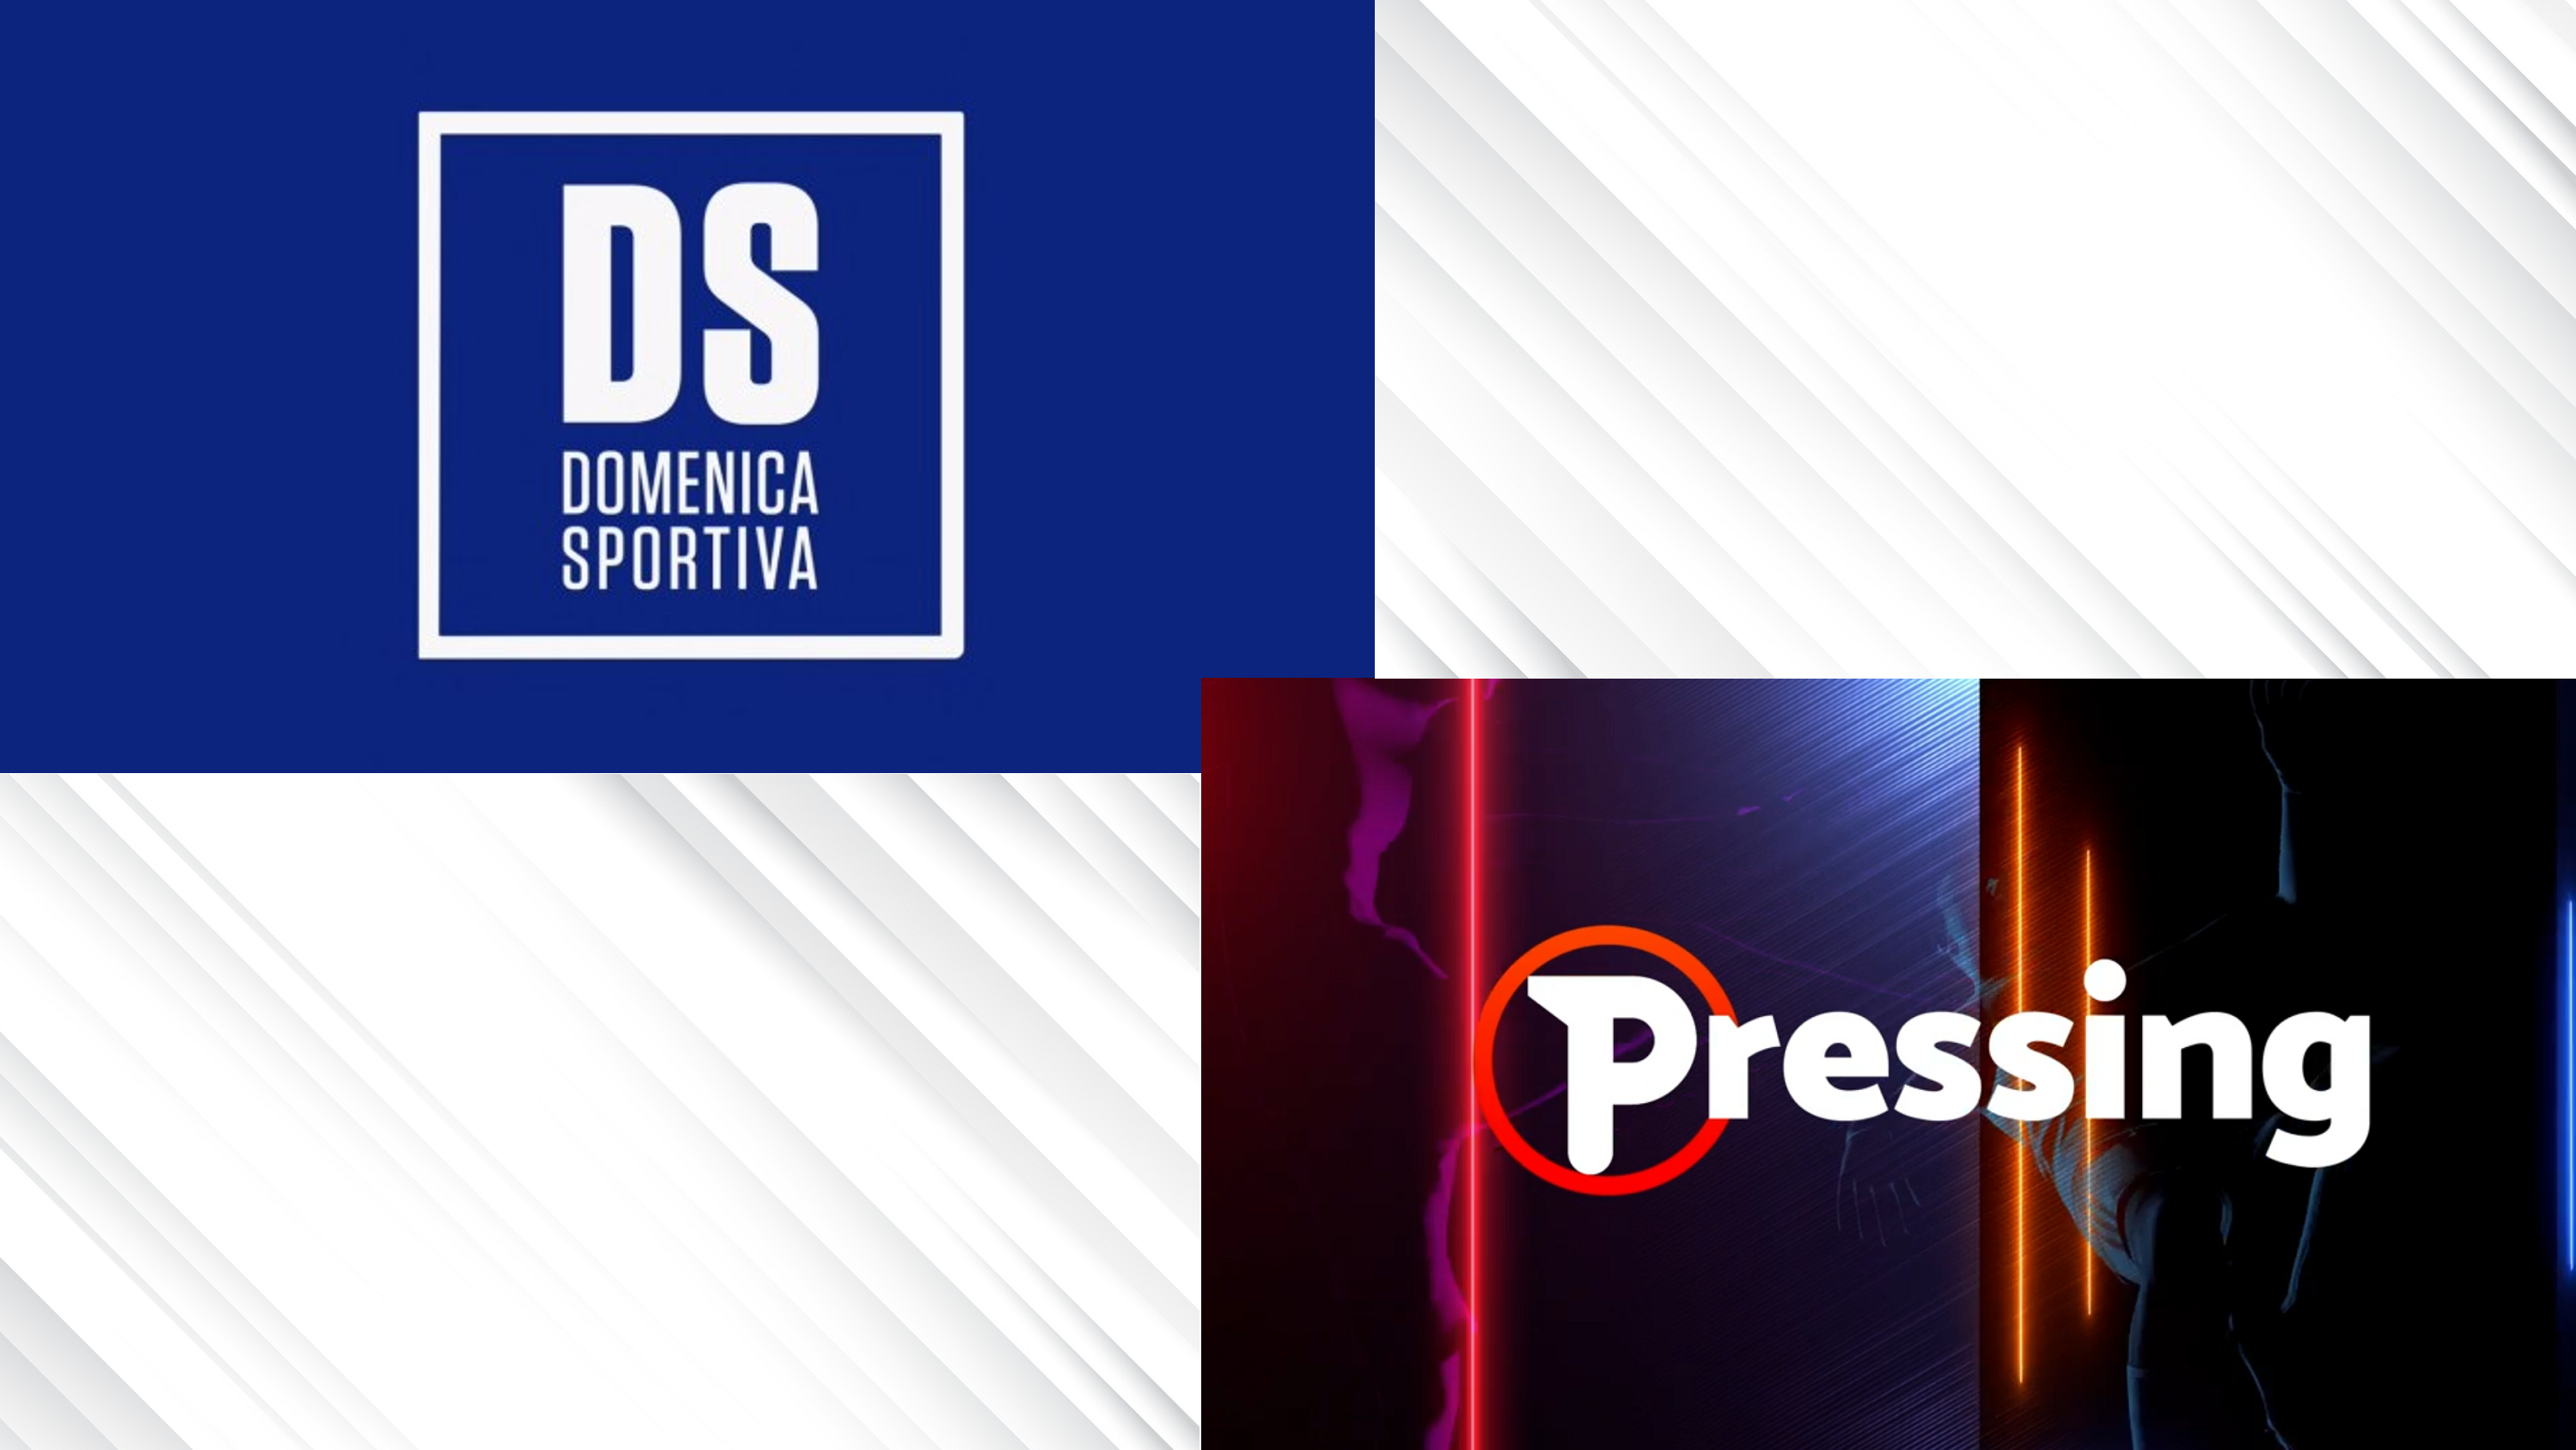 Serie A: ripartono La Domenica Sportiva e Pressing, dando il via alla nuova stagione tv. Analizziamo gli ascolti tv dei programmi...